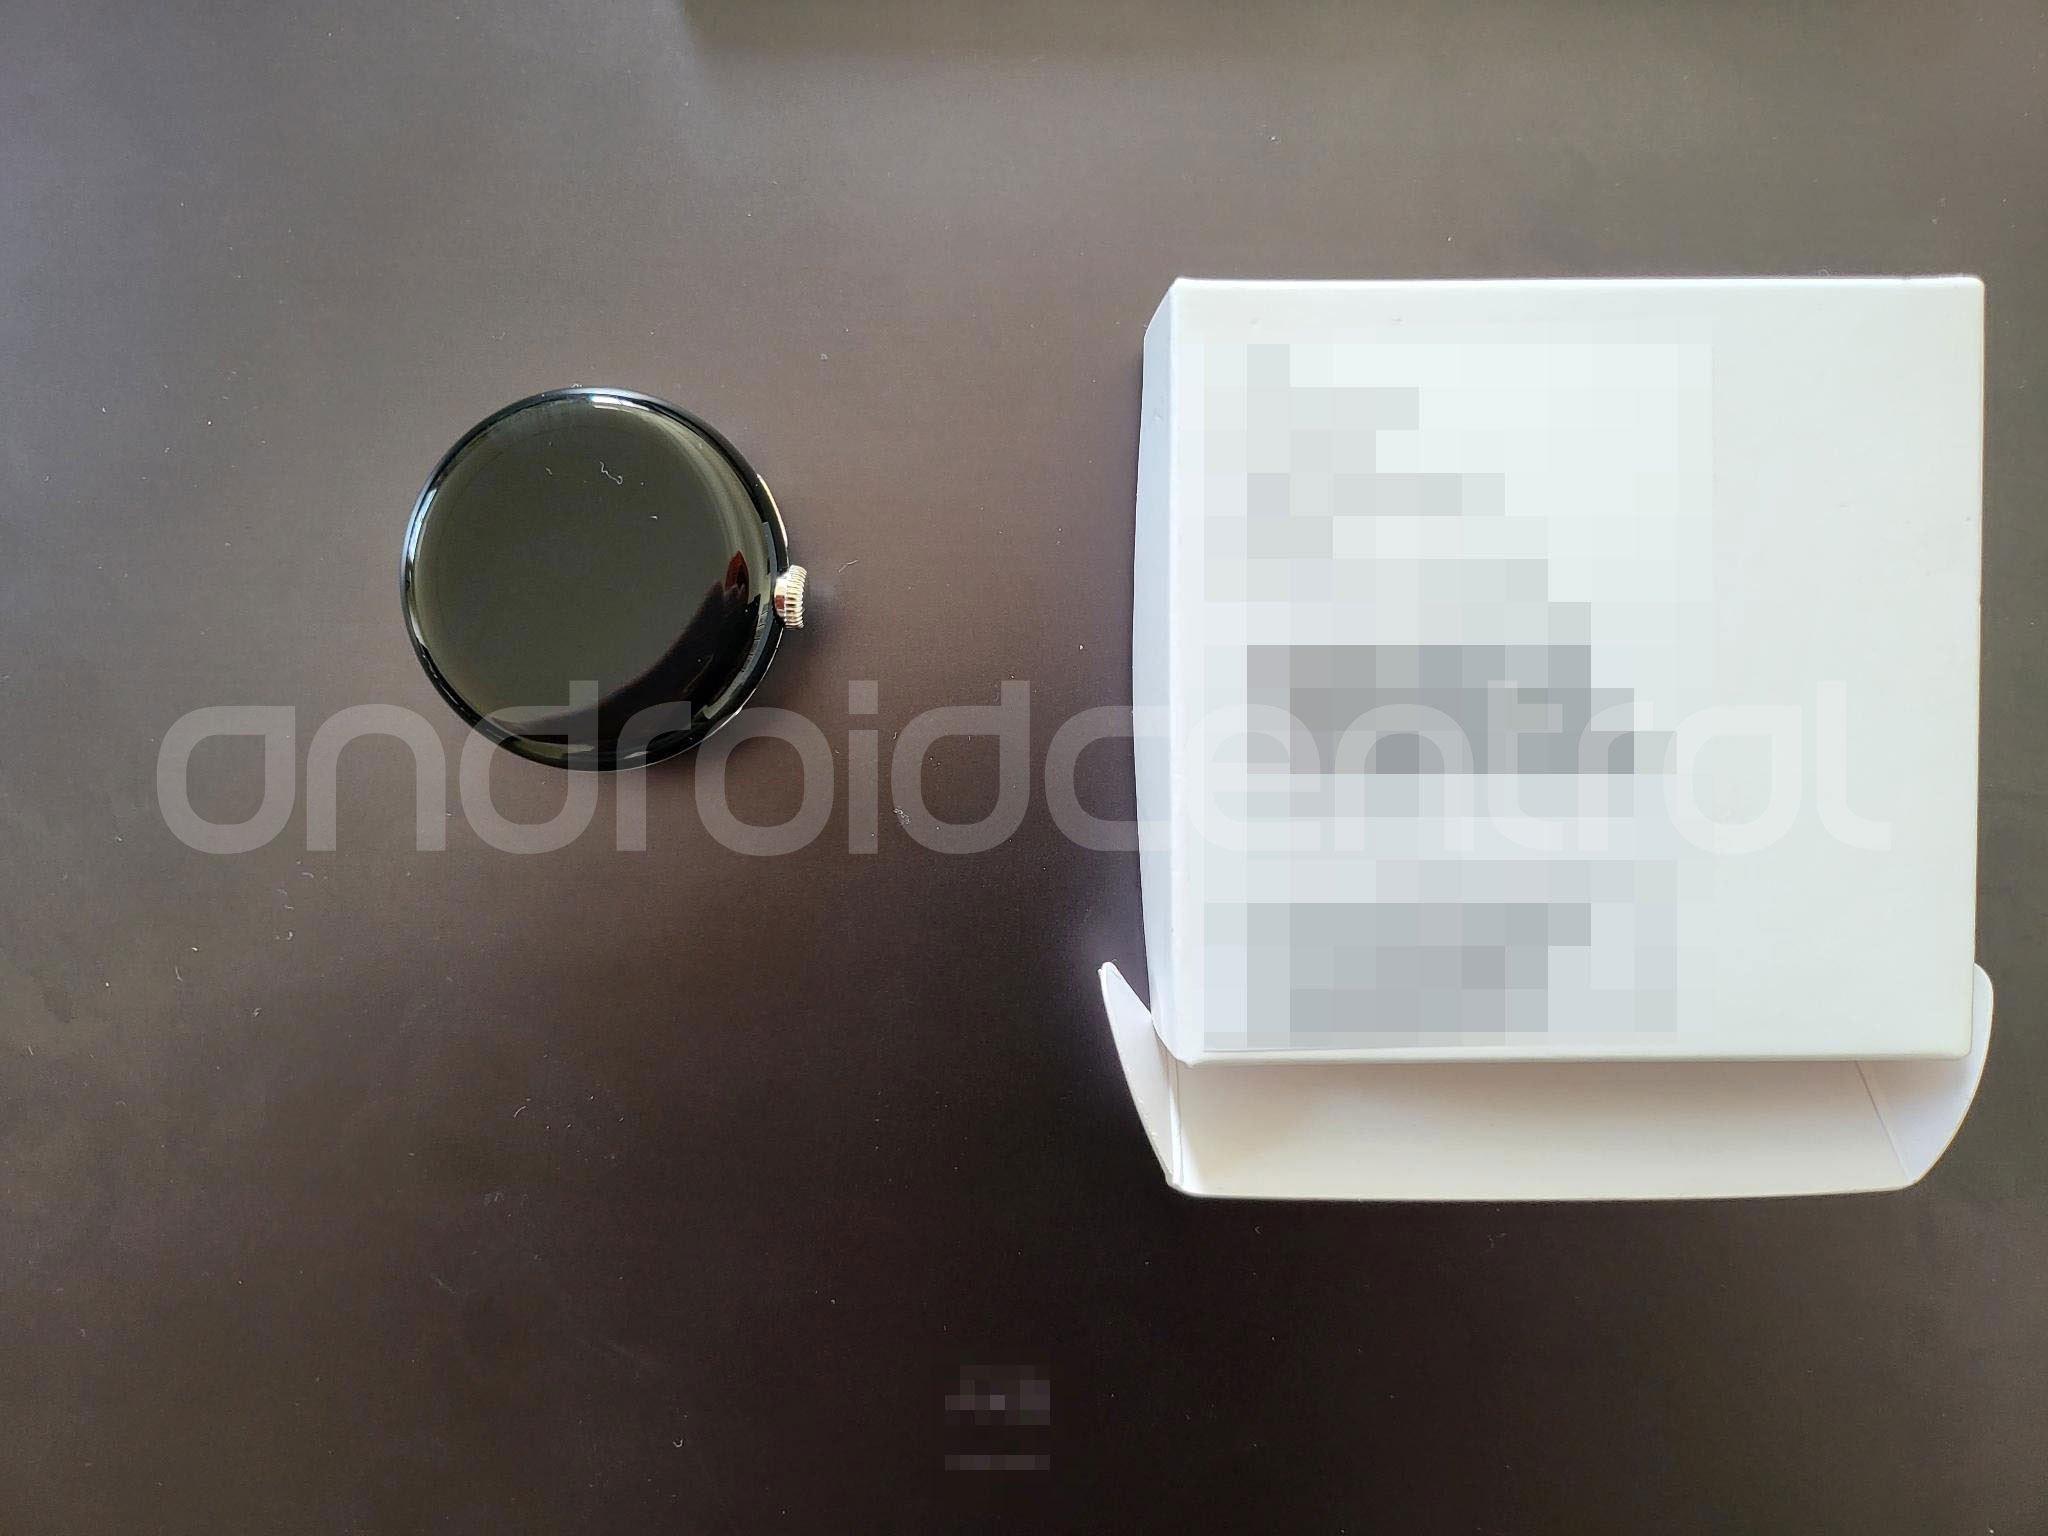 Pixel Watch: primeras imágenes reales filtradas del smartwatch de Google 11